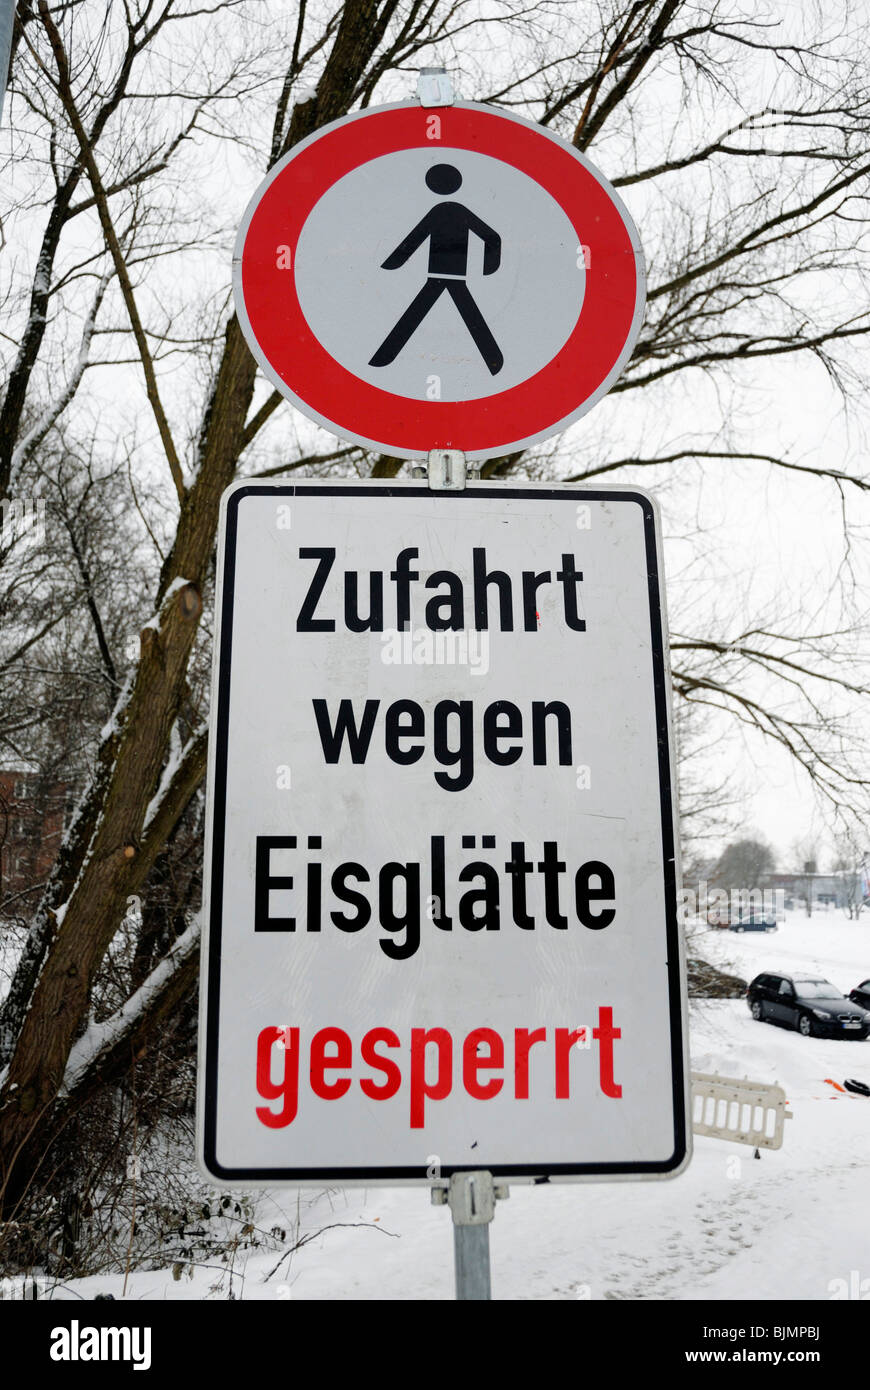 Sign, 'Zufahrt wegen Eisglaette gesperrt', access blocked due to icy roads Stock Photo